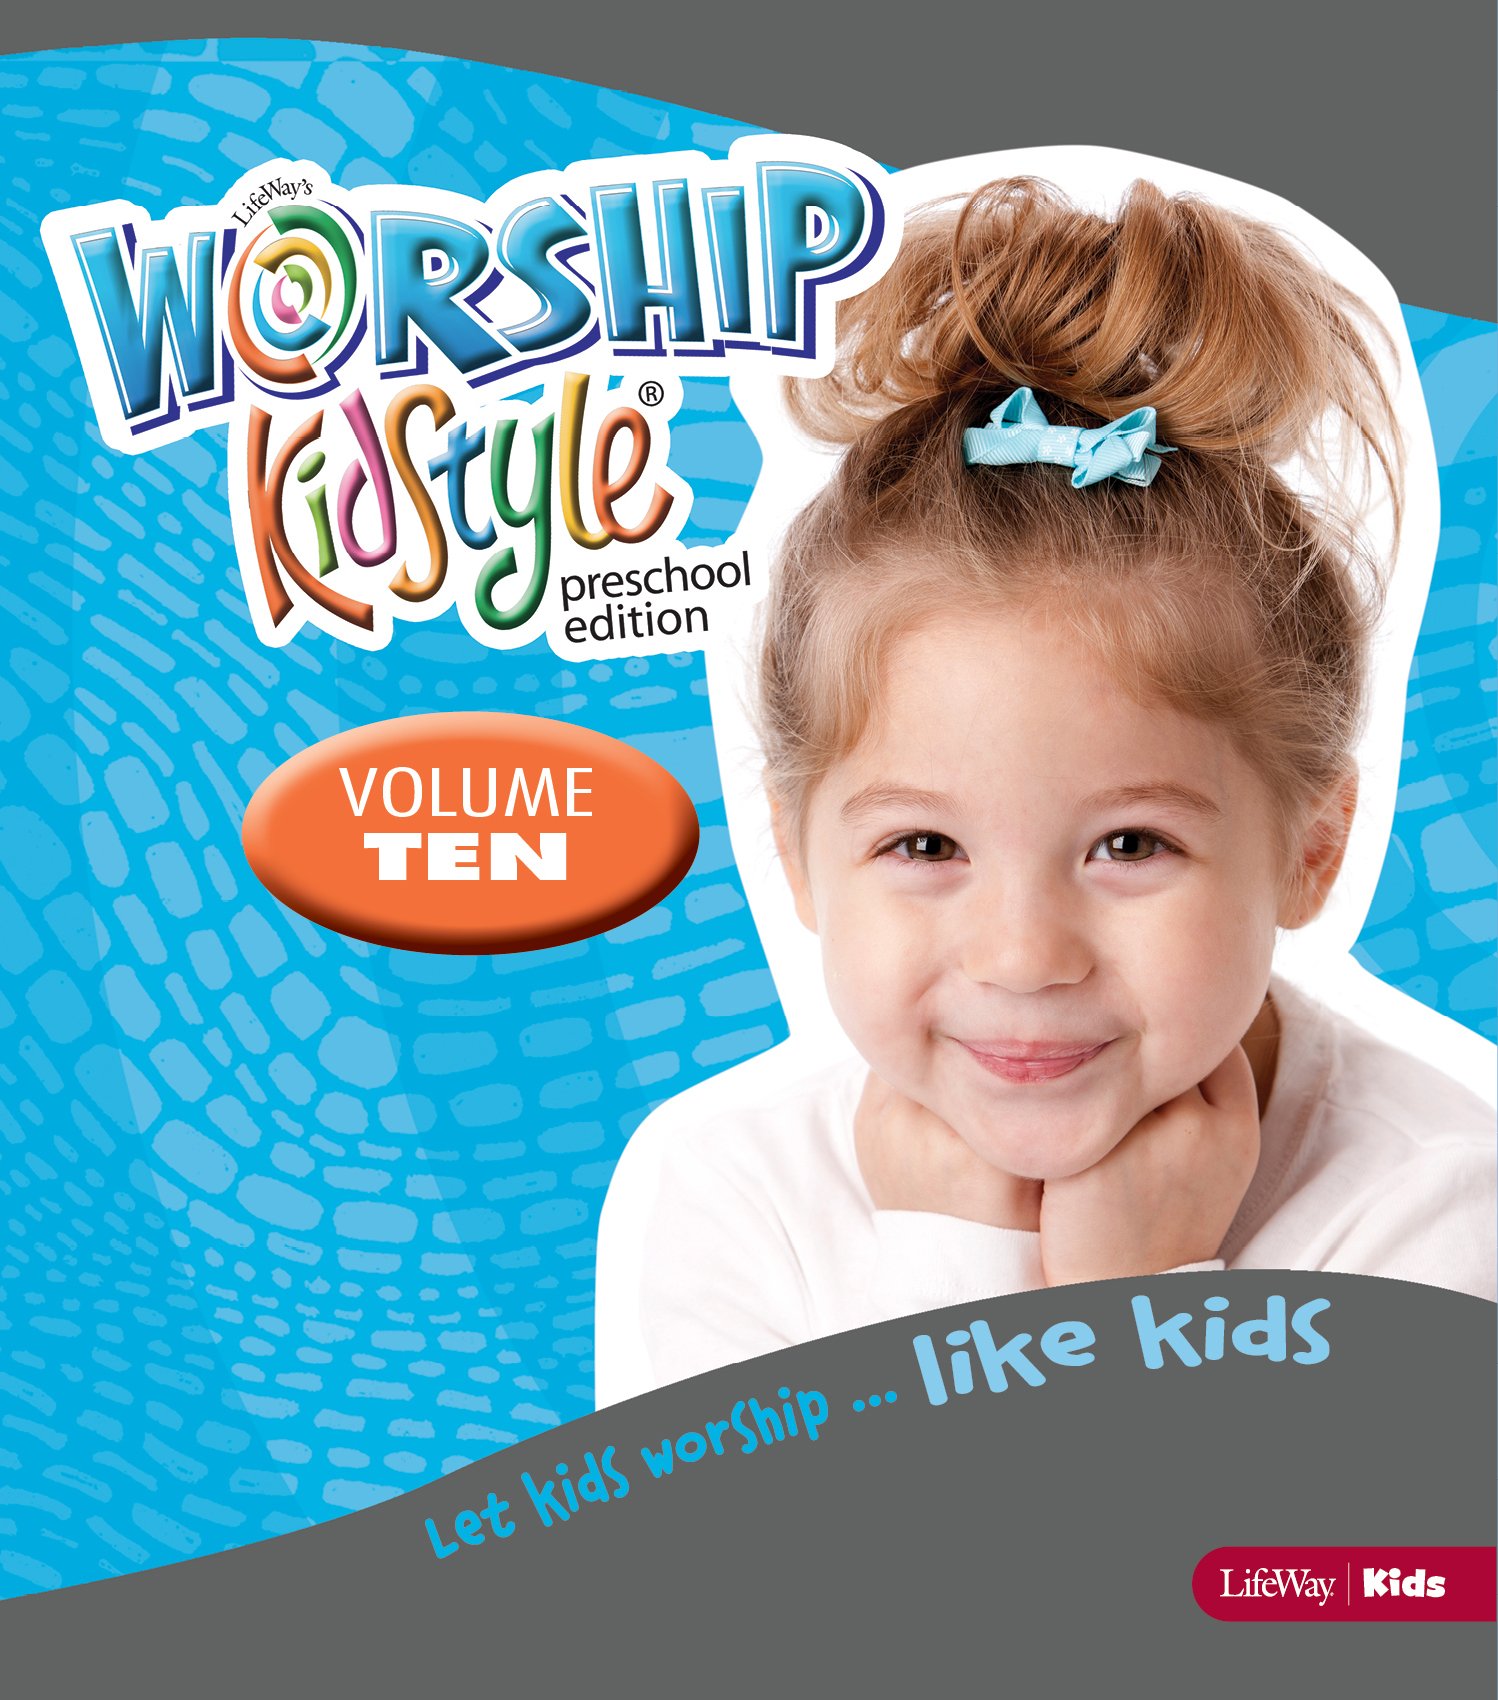 Worship KidStyle: Preschool All-In-One Kit Volume 10